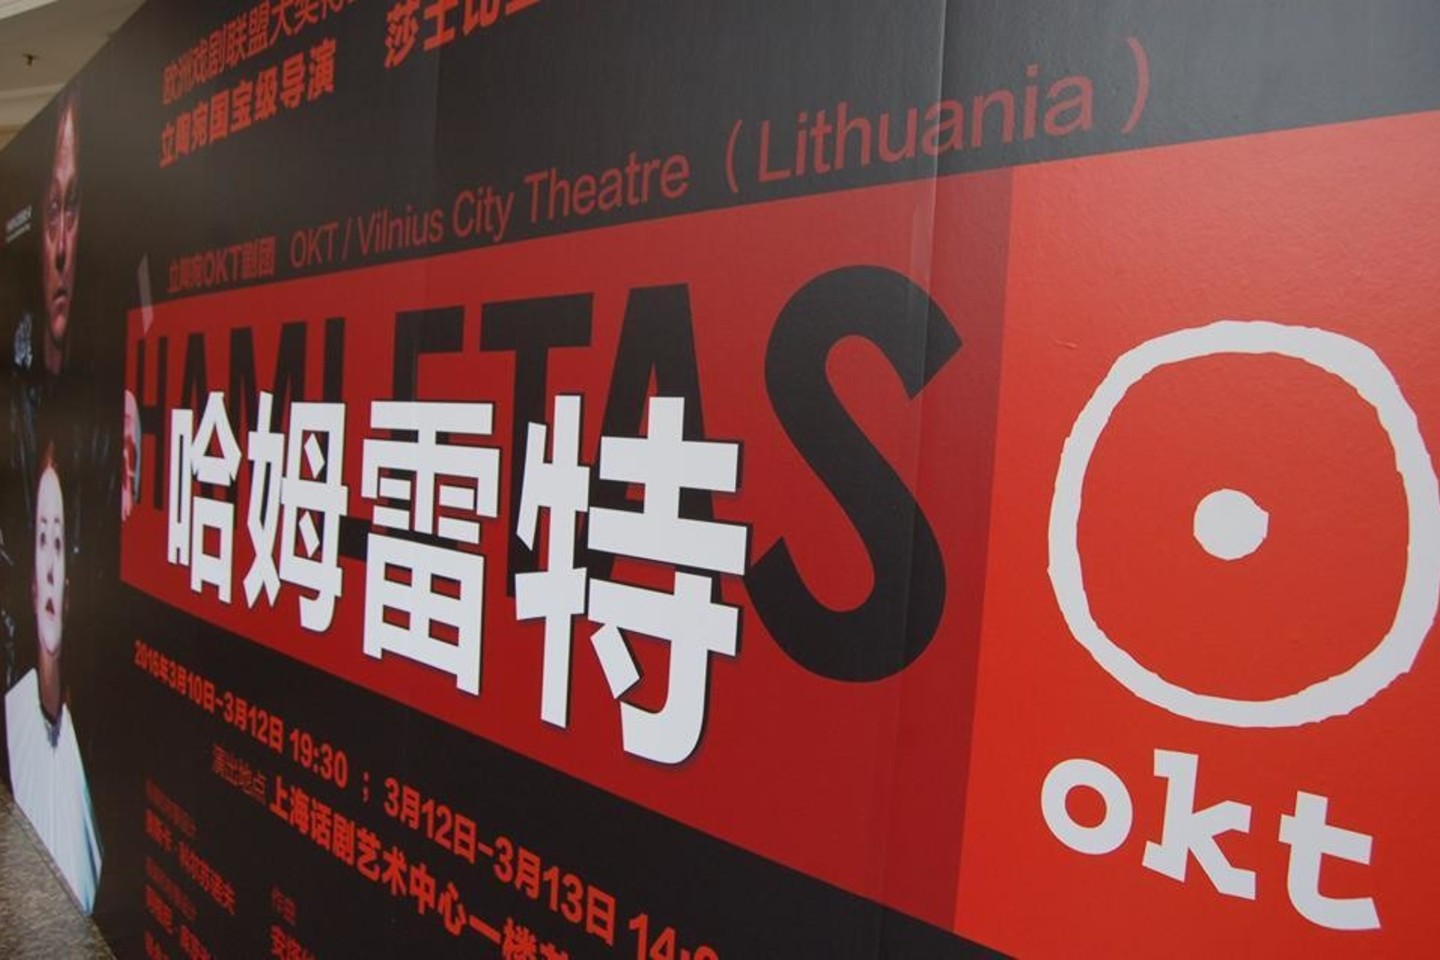 OKT/Vilniaus miesto teatro trupė Kinijoje.